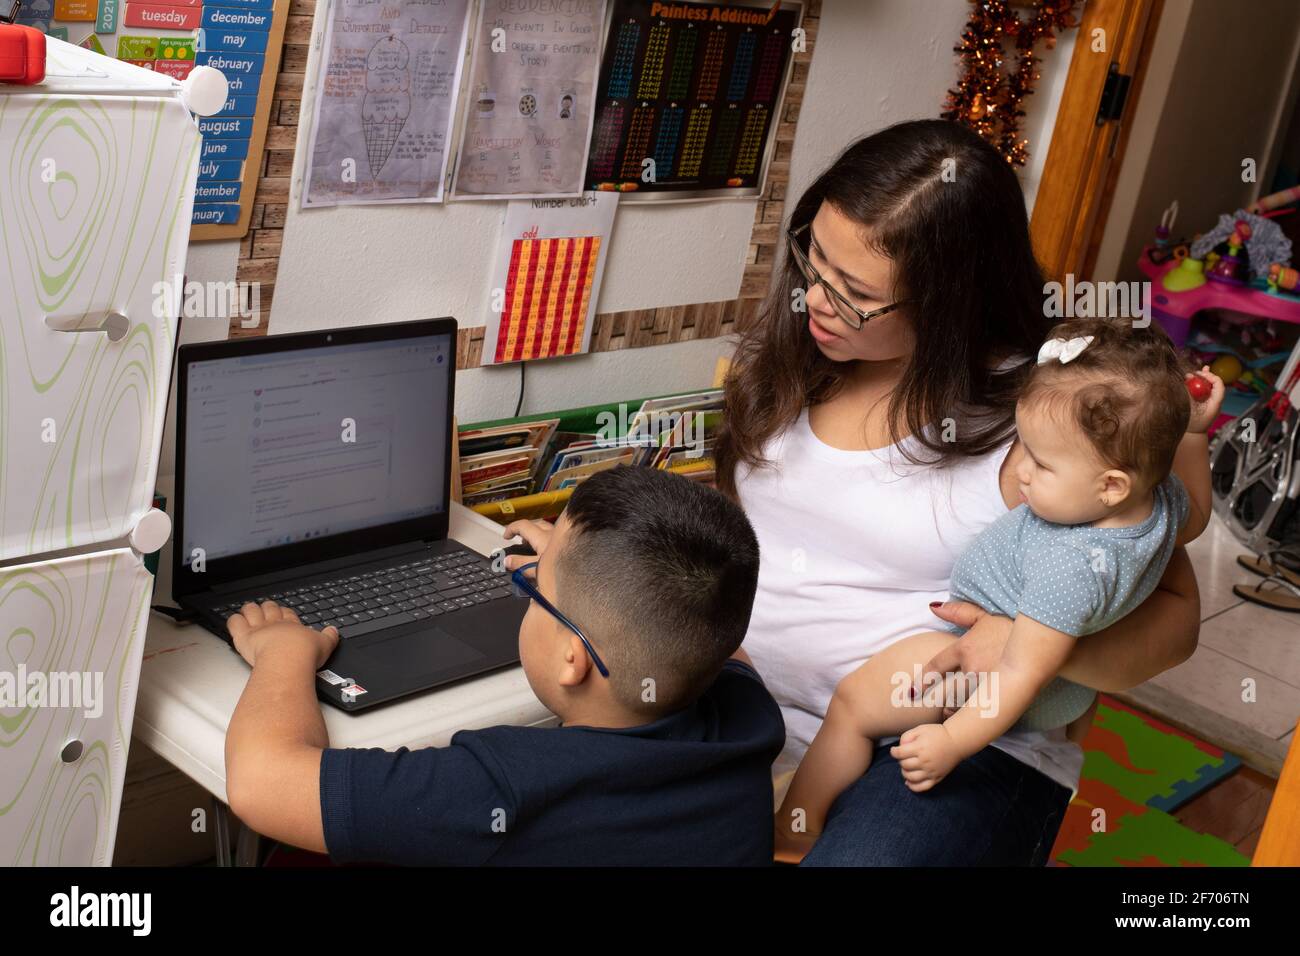 niño de 7 años, usando gafas usando computadora portátil para el trabajo escolar, madre ayudándole sosteniendo a su hermana de 7 meses, aprendiendo en casa Foto de stock